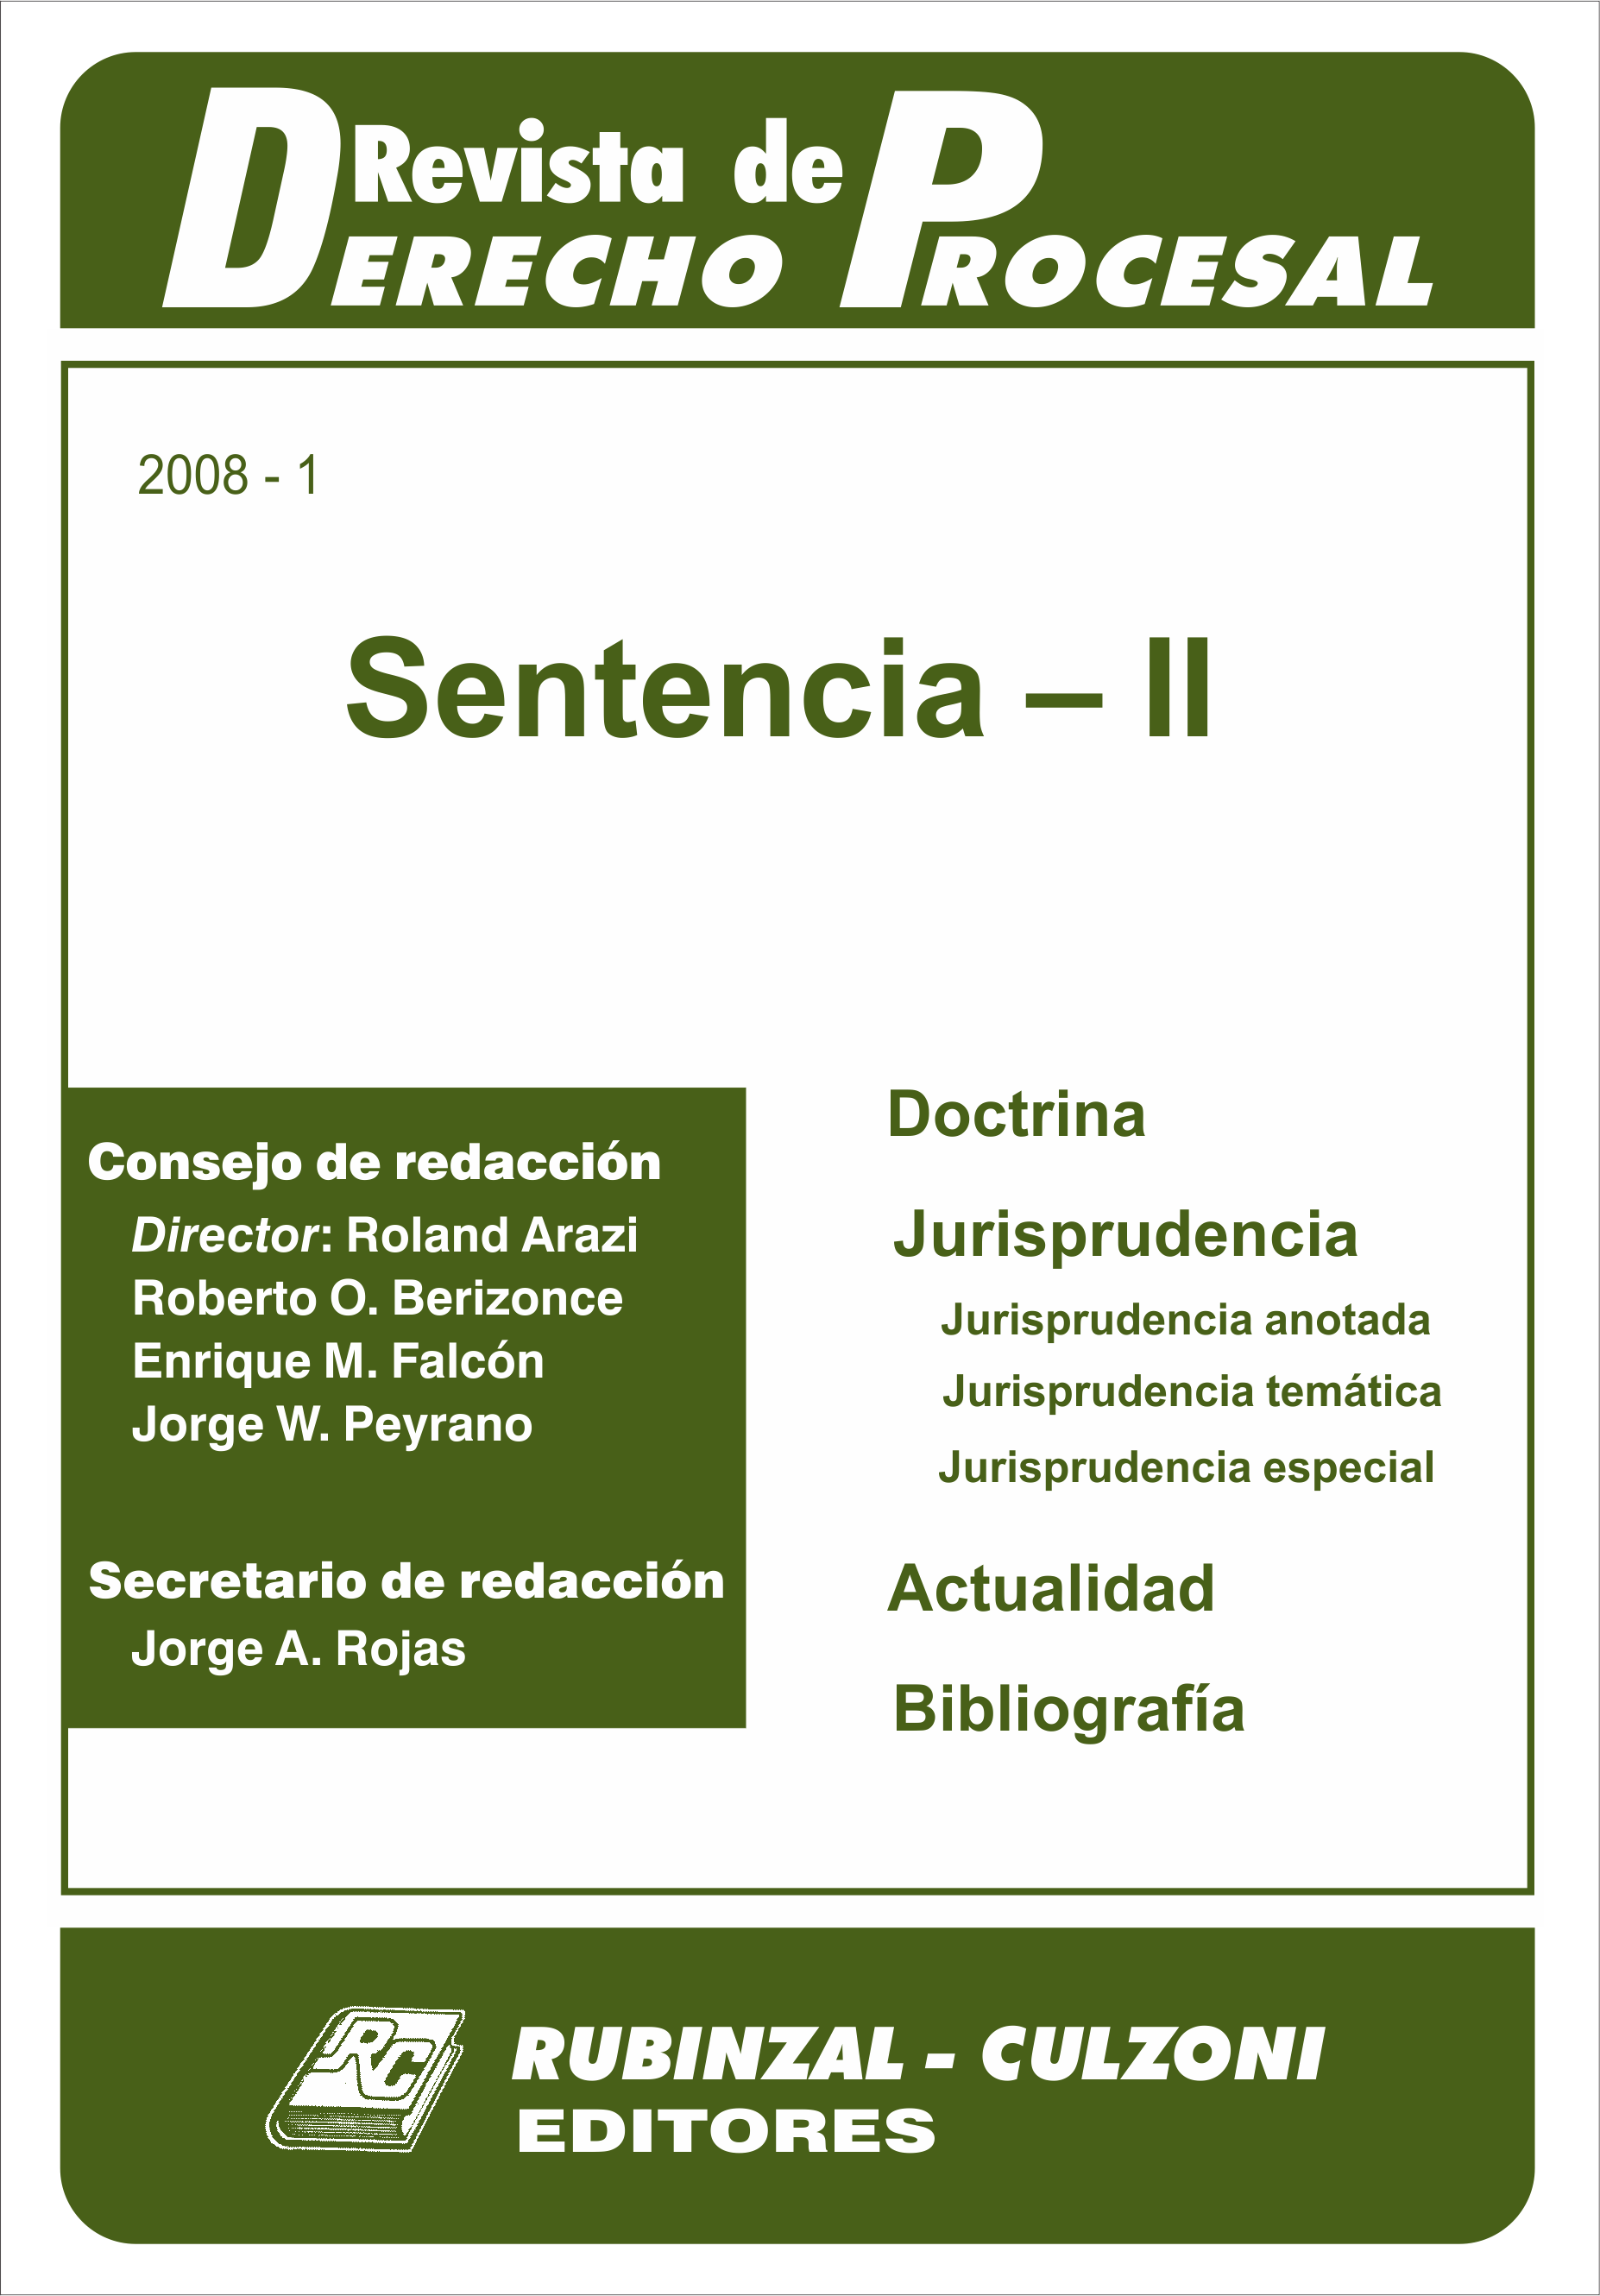  - Sentencia - II. [2008-1]